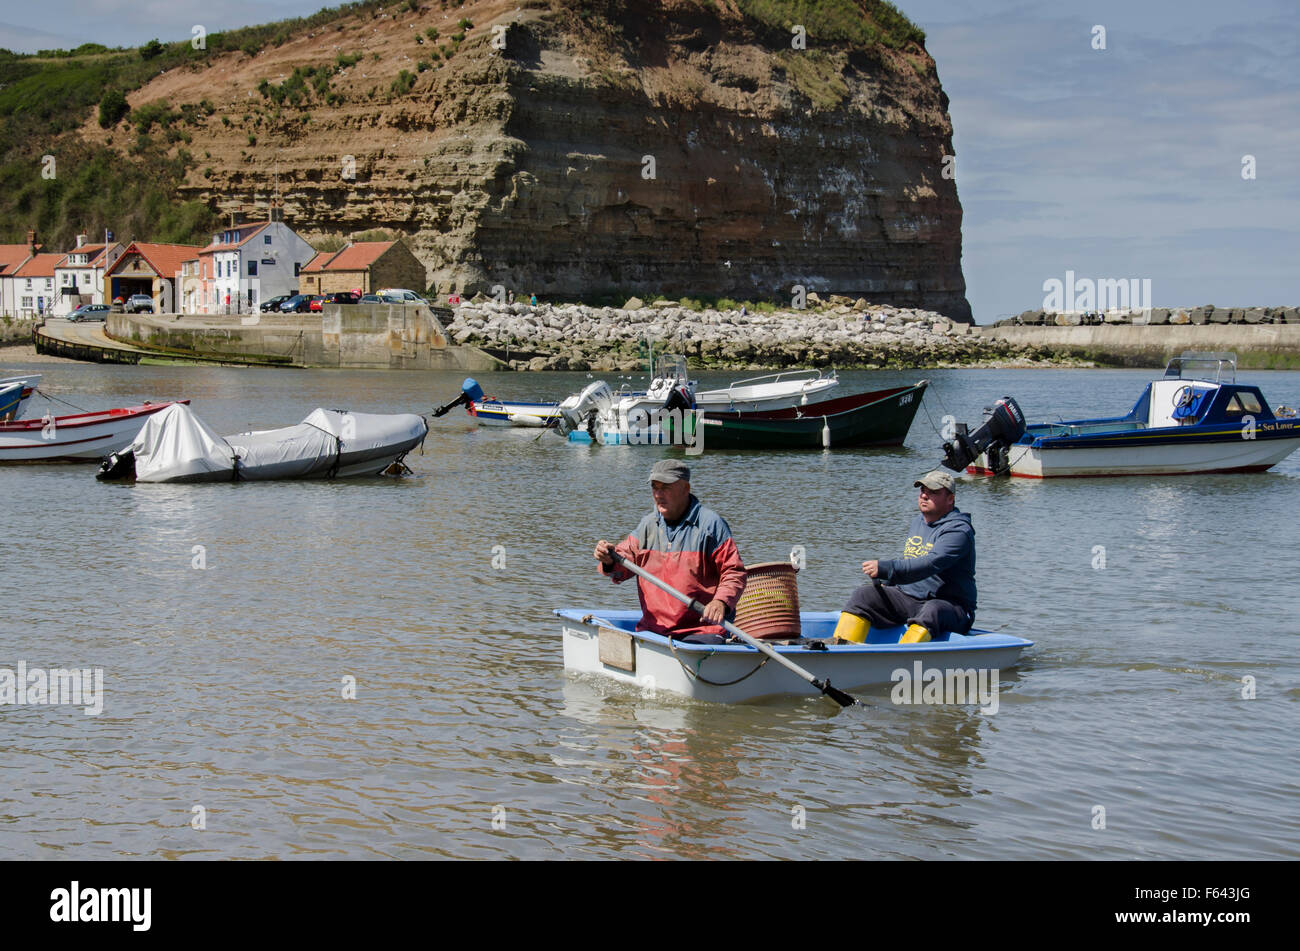 Soleggiata giornata estiva, 2 i pescatori sono il canottaggio a riva in una piccola barca con loro la pesca di cattura - porto di mare, Staithes' village, North Yorkshire, Regno Unito. Foto Stock